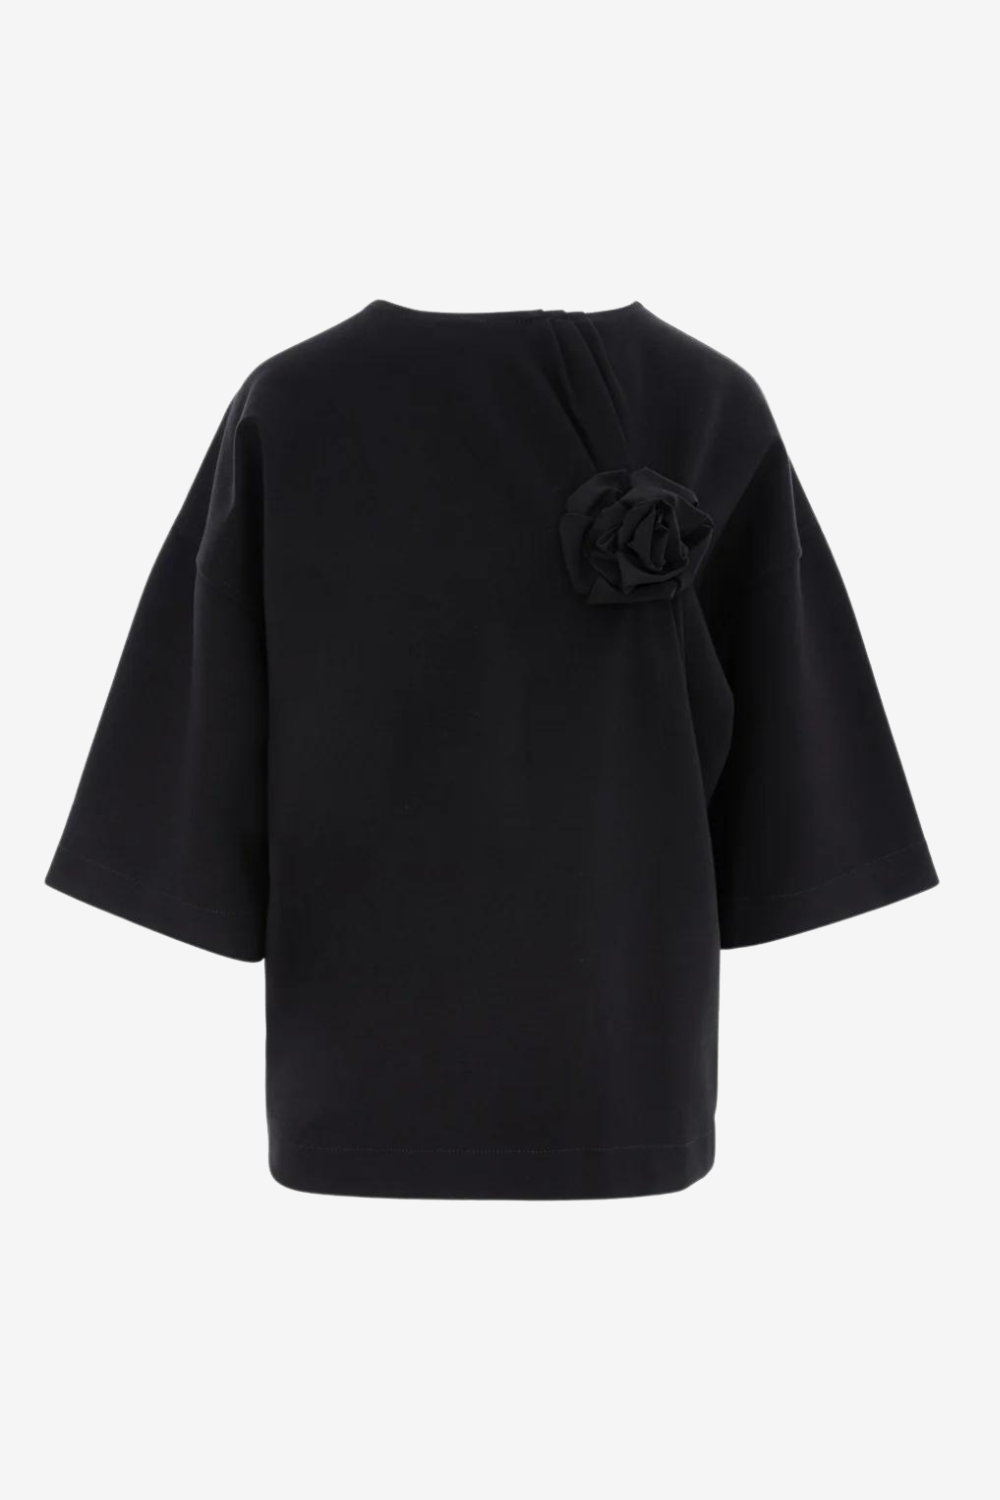 Tricou damă, negru, imprimeu floral Kyo Rose, viscoză premium, croială oversized, detalii elegante (mâneci clopot).